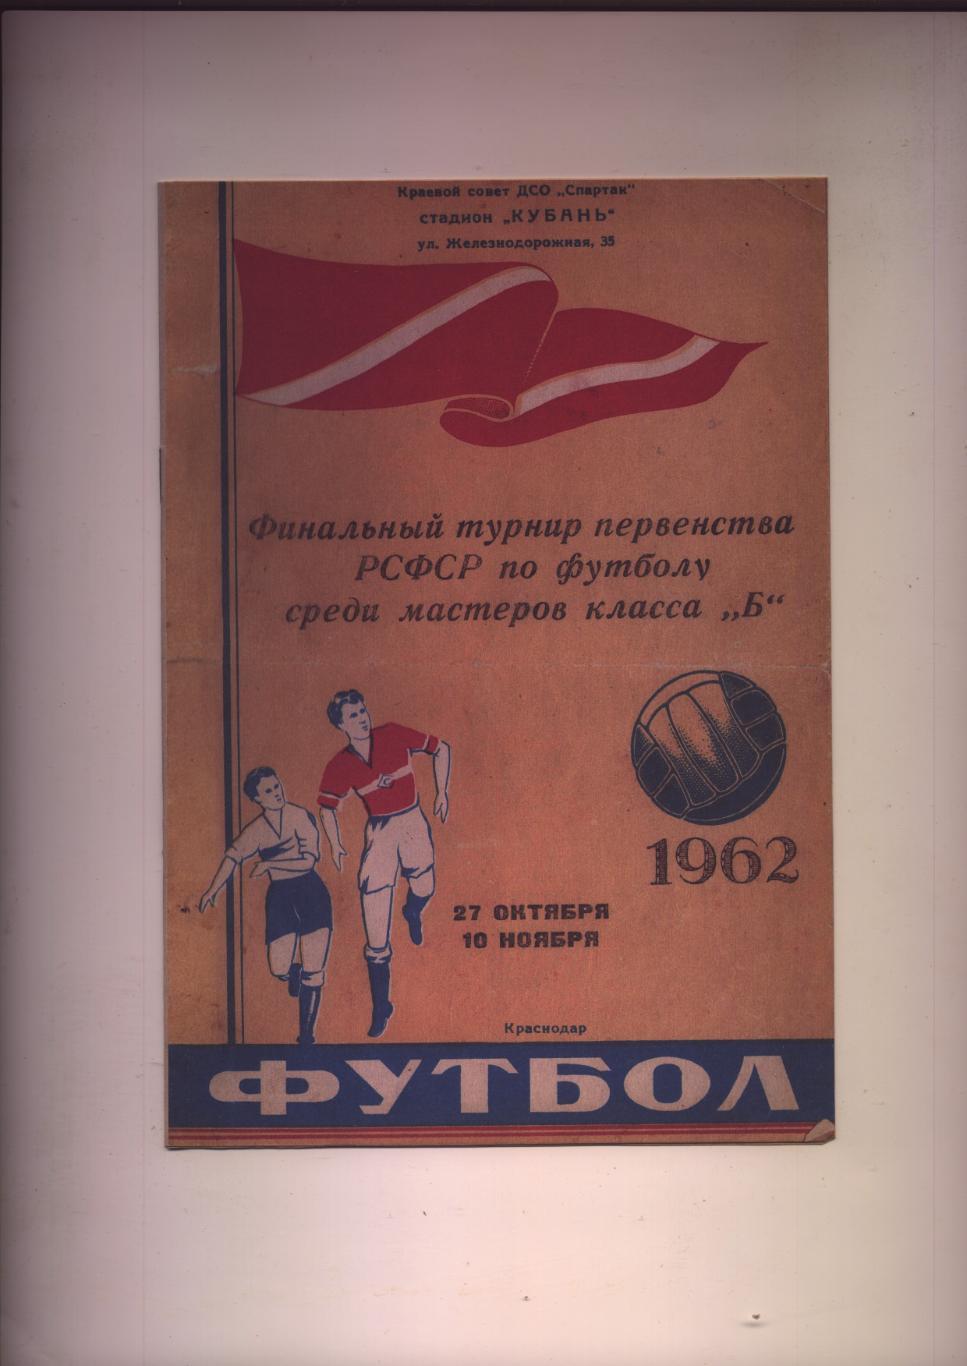 Футбол Участники Новосибирск Свердловск Краснодар Ярославль Воронеж 1962 г.